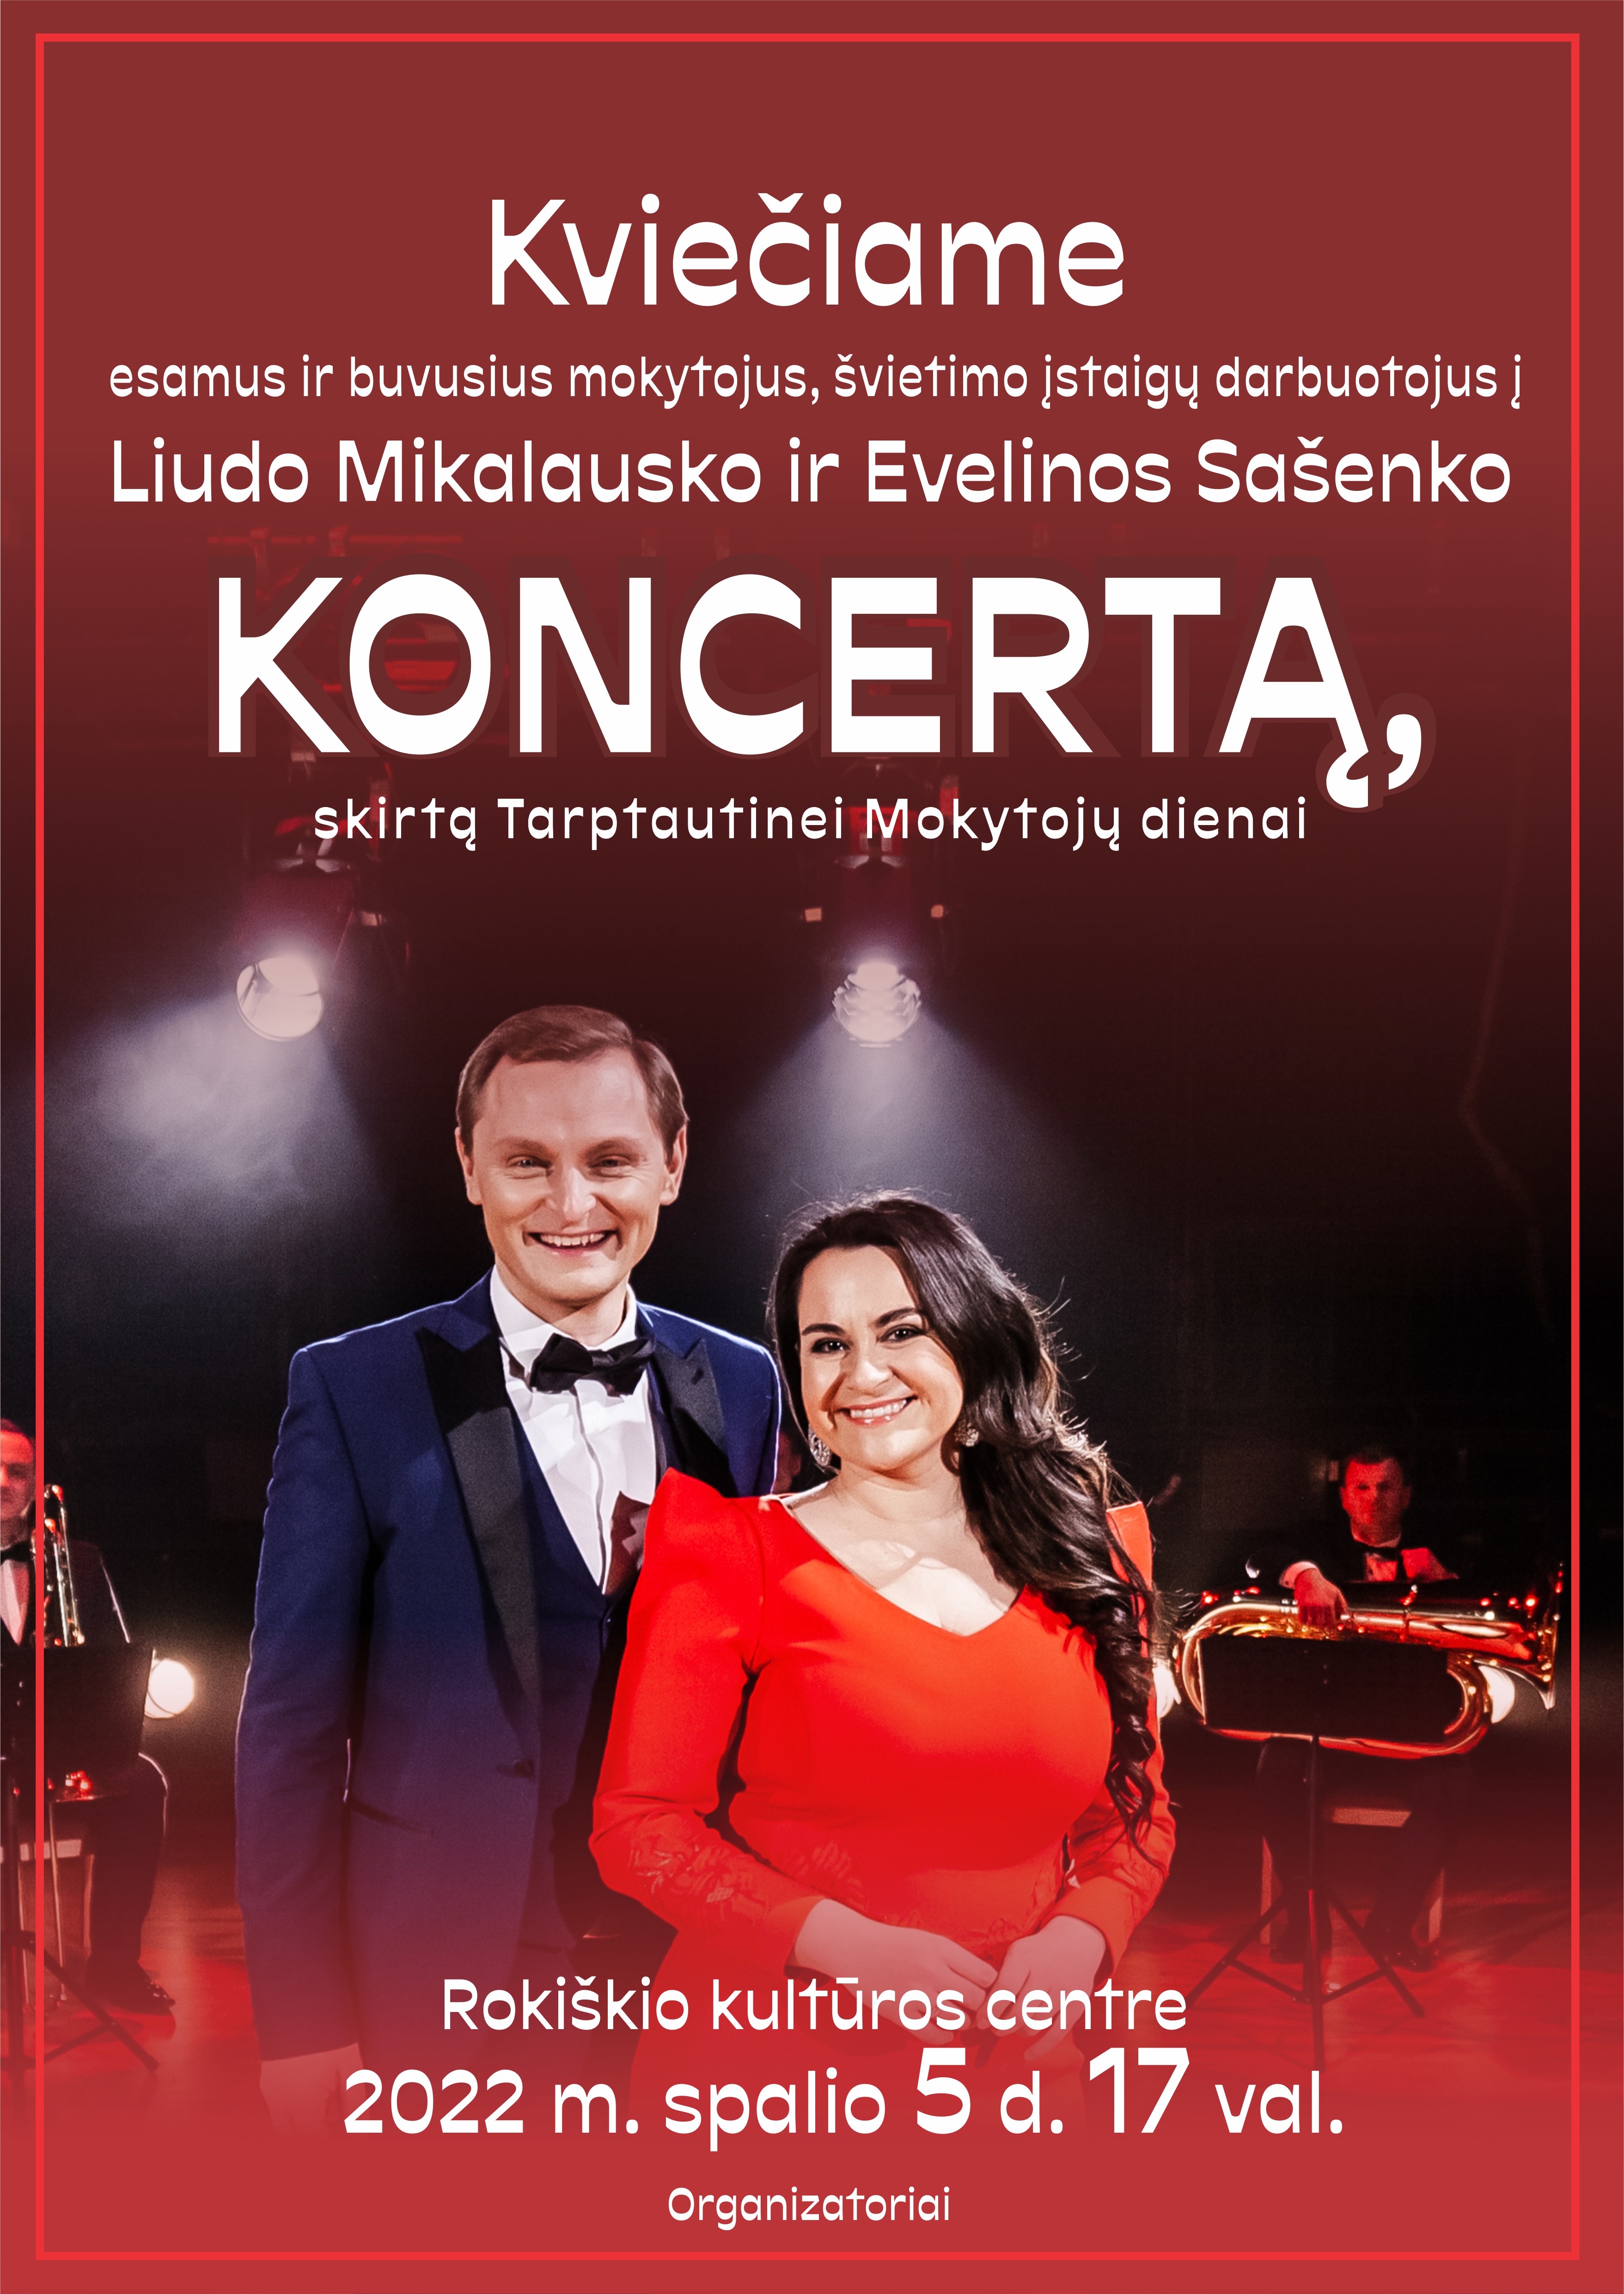 Koncertas, skirtas Tarptautinei Mokytojų dienai Rokiškio kultūros centre.